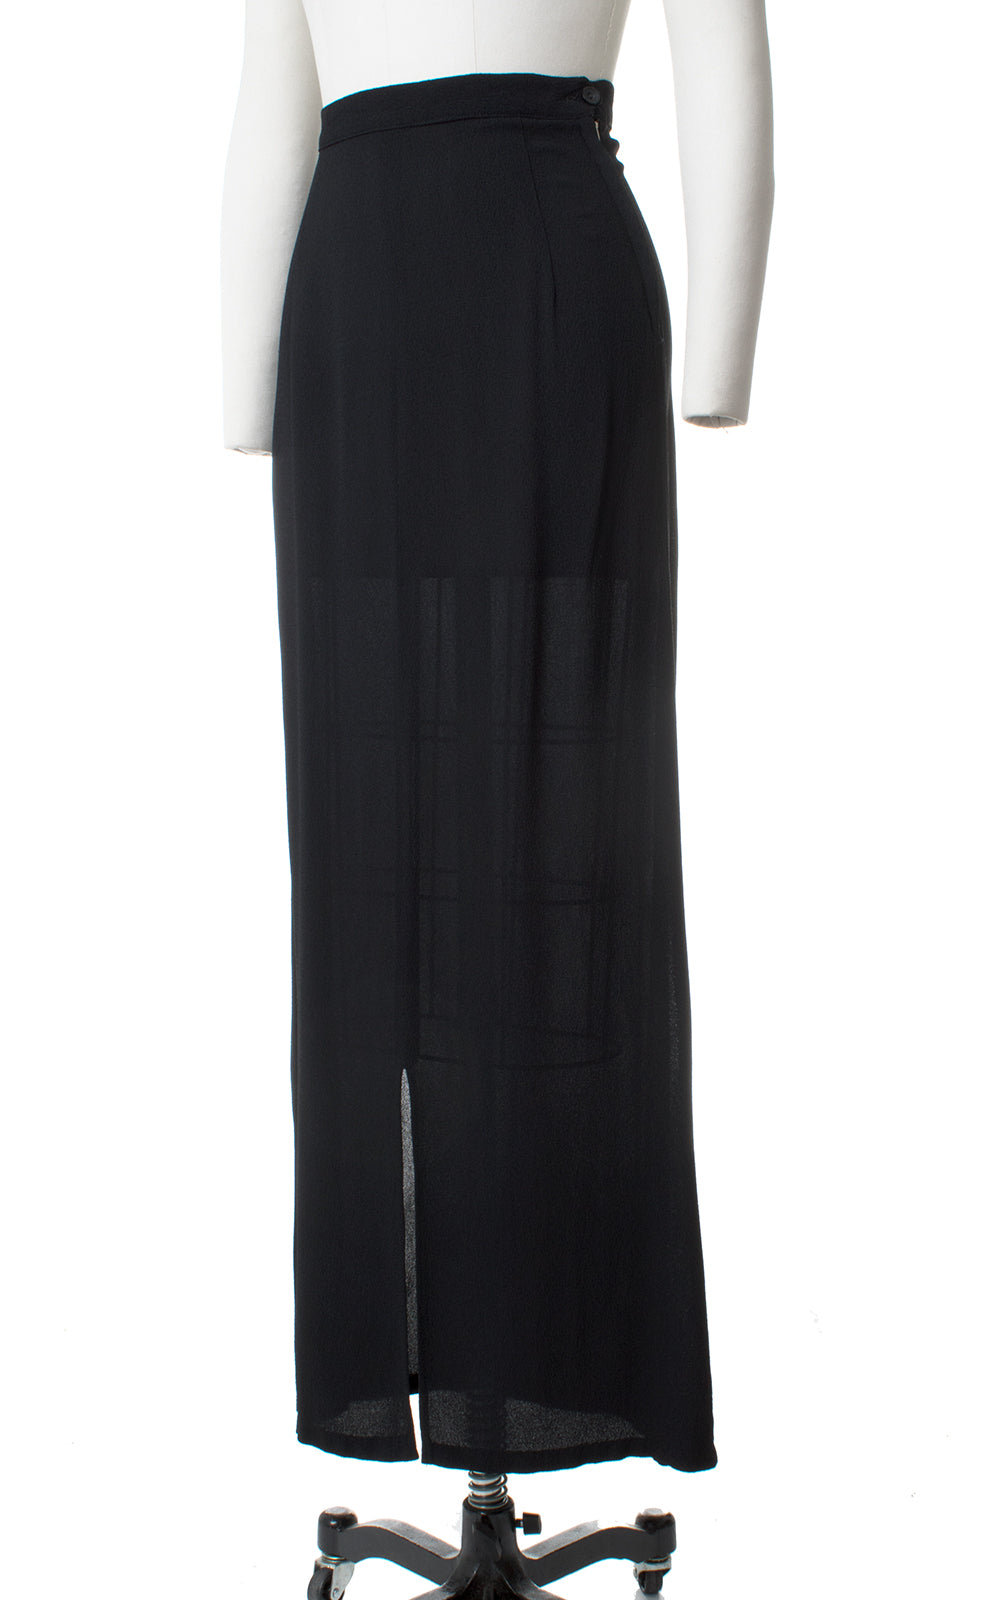 1930s Black Rayon Crepe Skirt